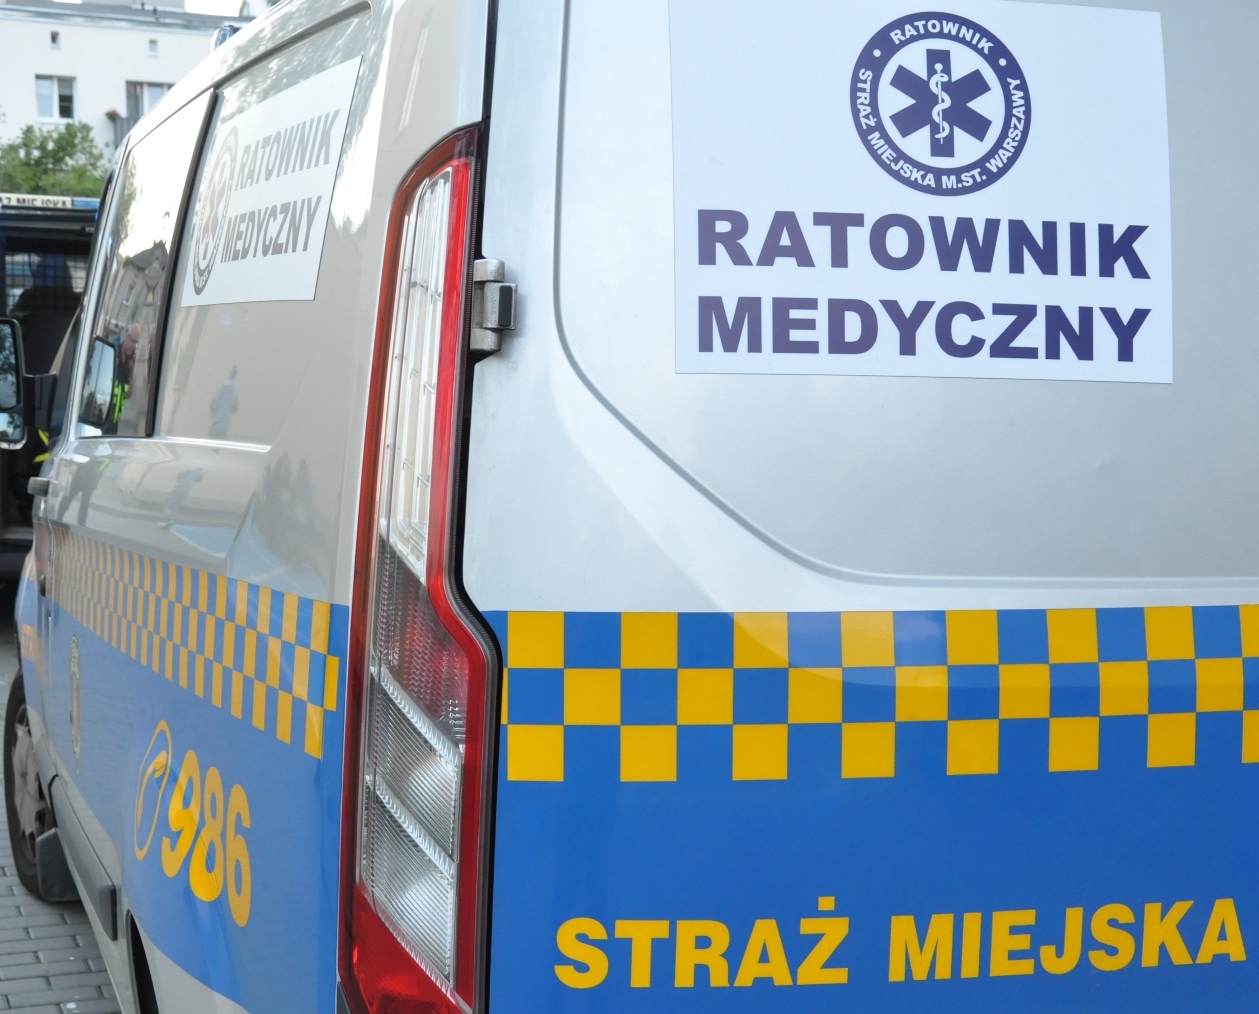 Radiowóz straży miejskiej z emblematem "ratownik medyczny"- zdjęcie ilustracyjne